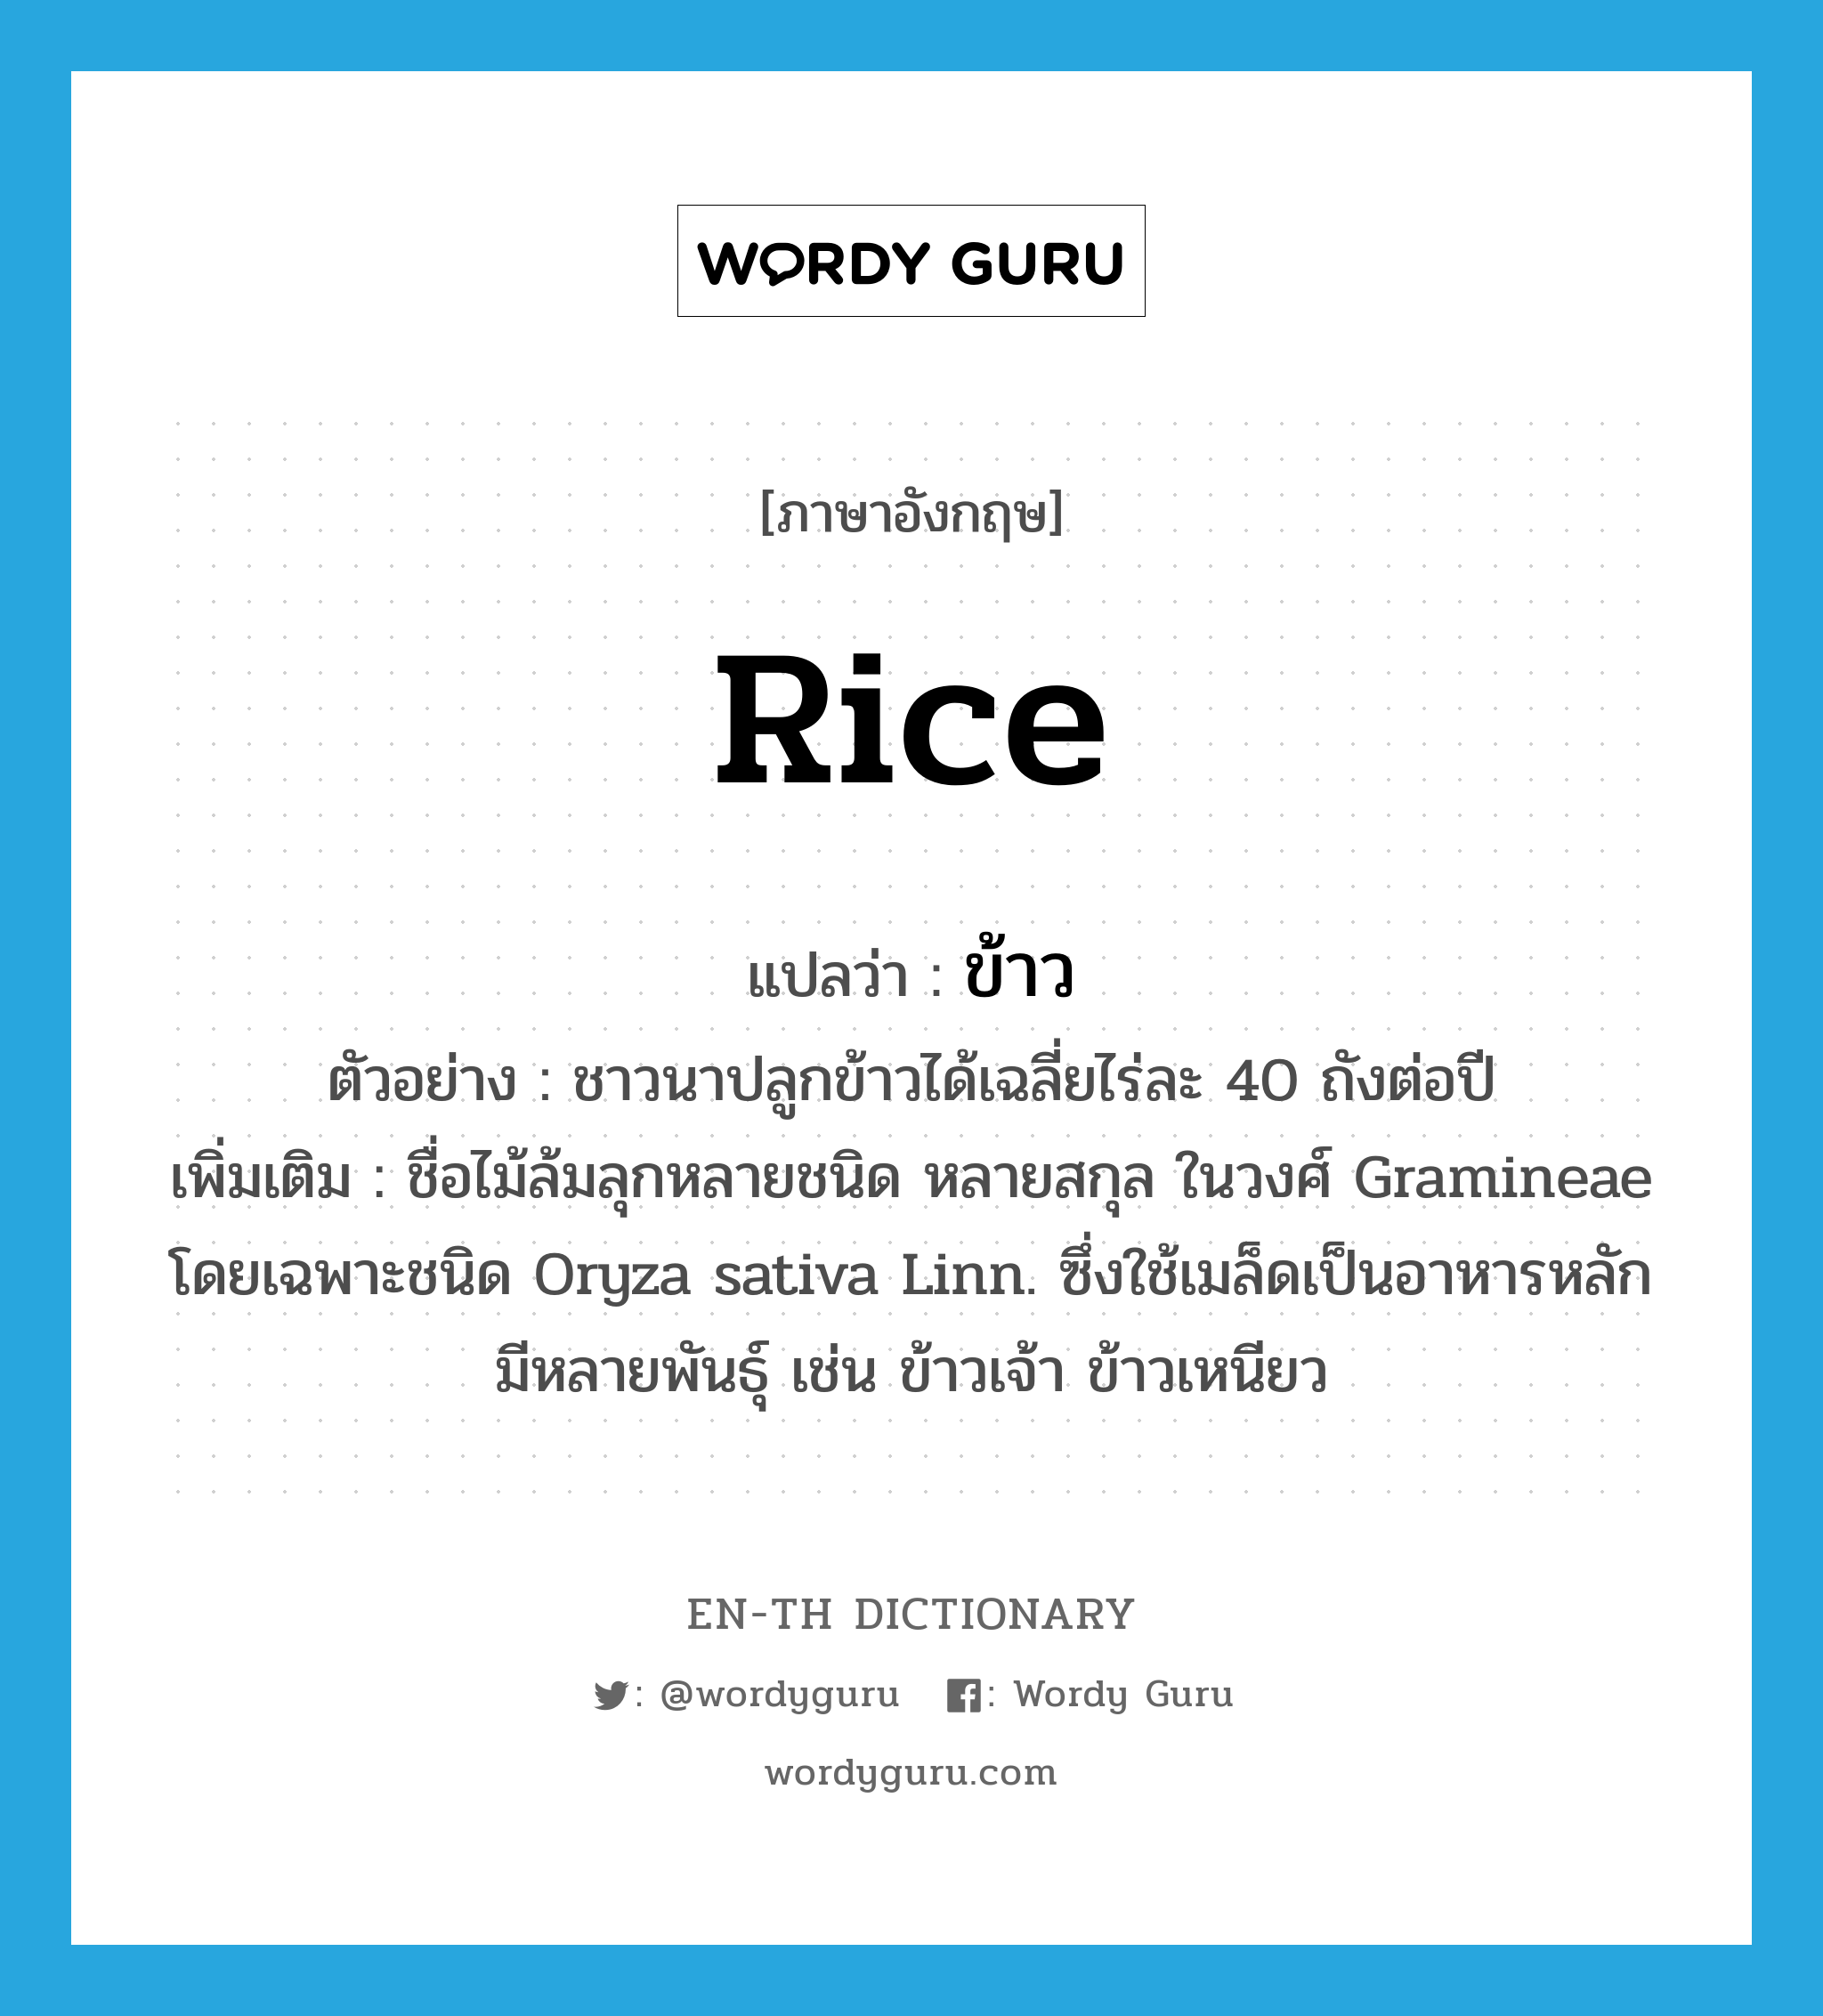 ข้าว ภาษาอังกฤษ?, คำศัพท์ภาษาอังกฤษ ข้าว แปลว่า rice ประเภท N ตัวอย่าง ชาวนาปลูกข้าวได้เฉลี่ยไร่ละ 40 ถังต่อปี เพิ่มเติม ชื่อไม้ล้มลุกหลายชนิด หลายสกุล ในวงศ์ Gramineae โดยเฉพาะชนิด Oryza sativa Linn. ซึ่งใช้เมล็ดเป็นอาหารหลัก มีหลายพันธุ์ เช่น ข้าวเจ้า ข้าวเหนียว หมวด N